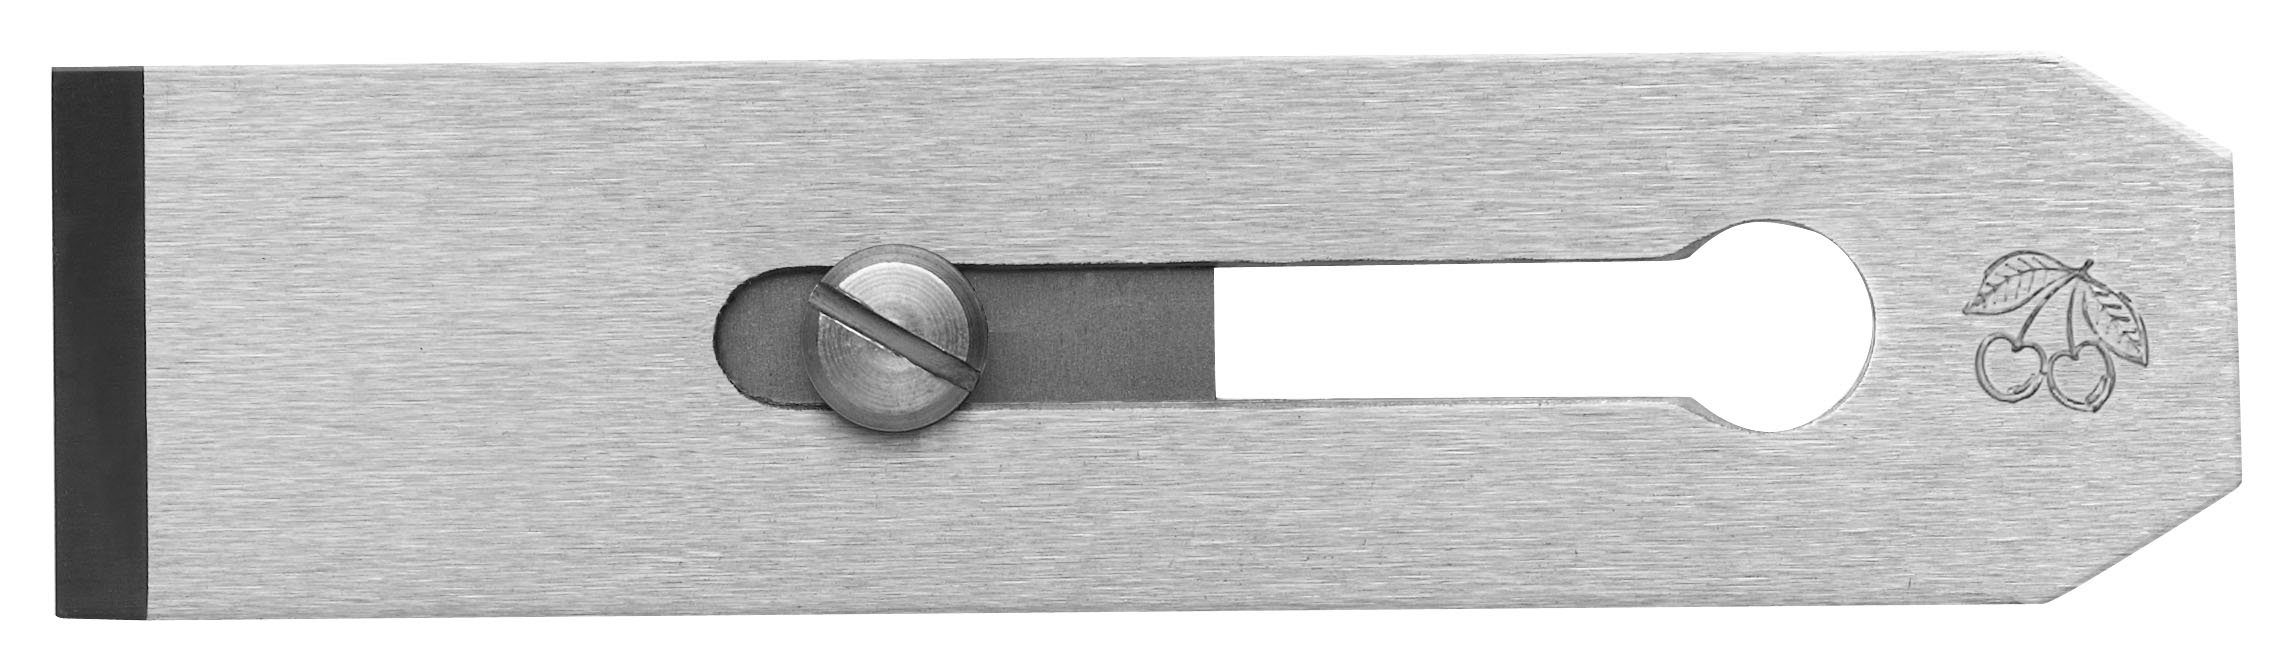 Kirschen Hobelmesser KIRSCHEN Doppelhobeleisen - 54mm